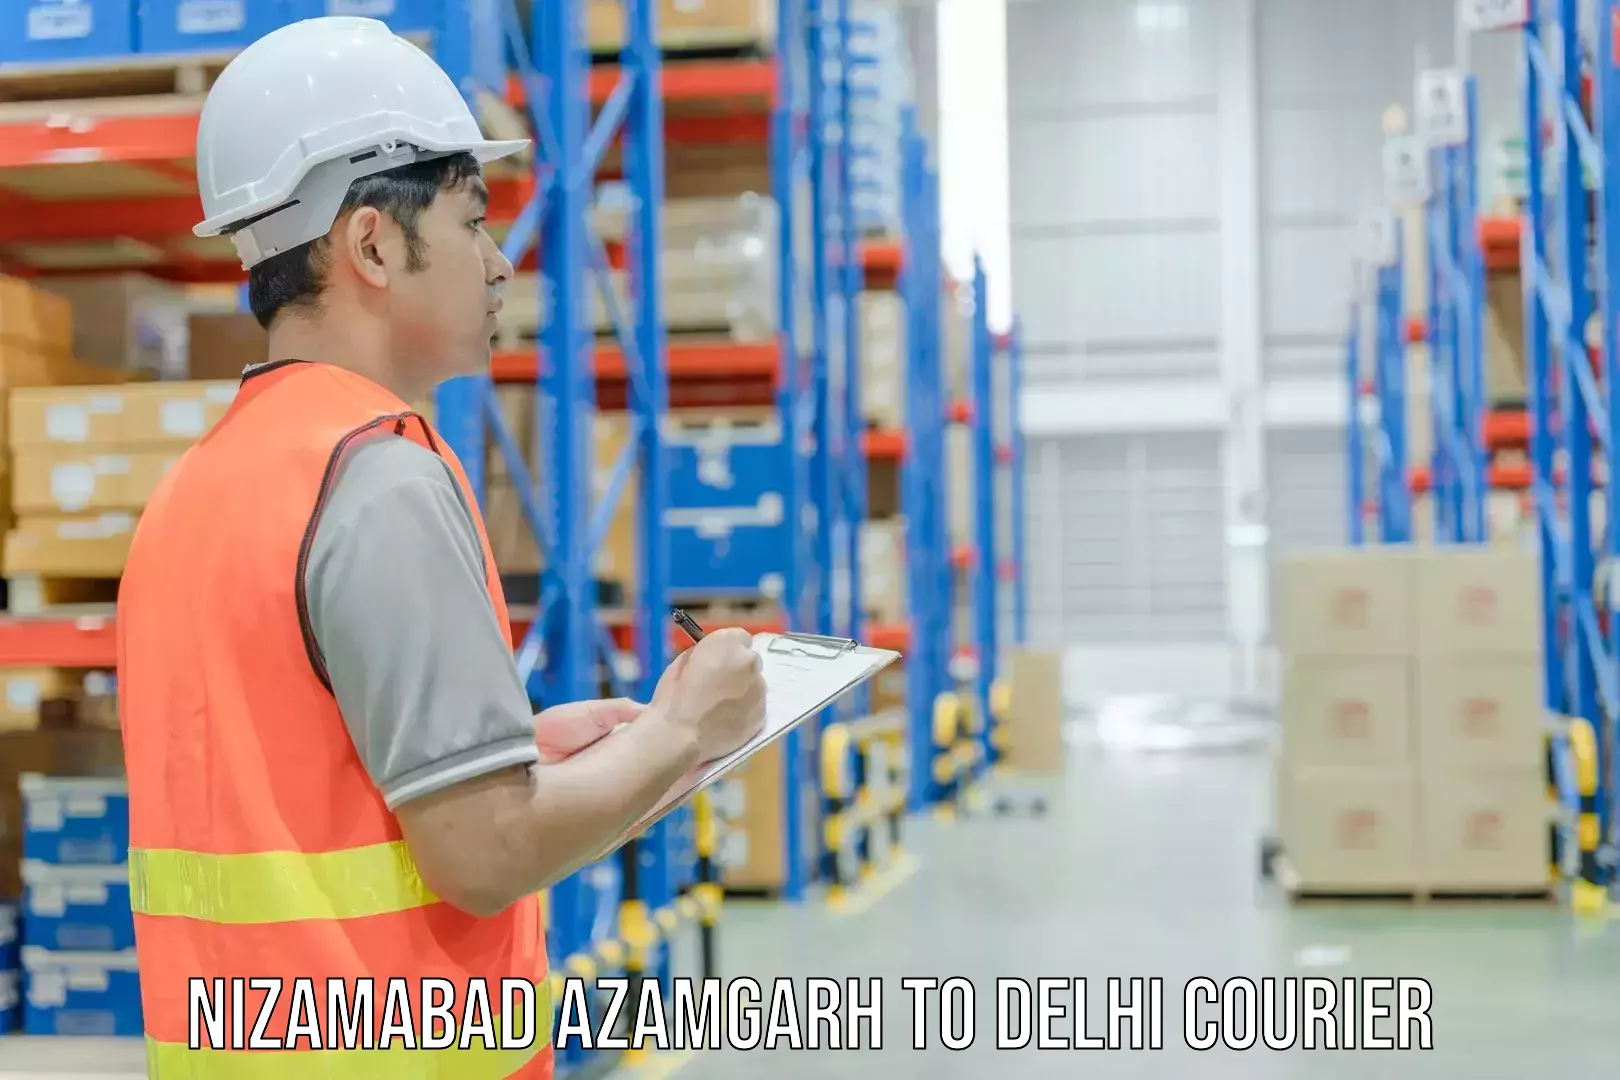 Customer-centric shipping Nizamabad Azamgarh to NIT Delhi